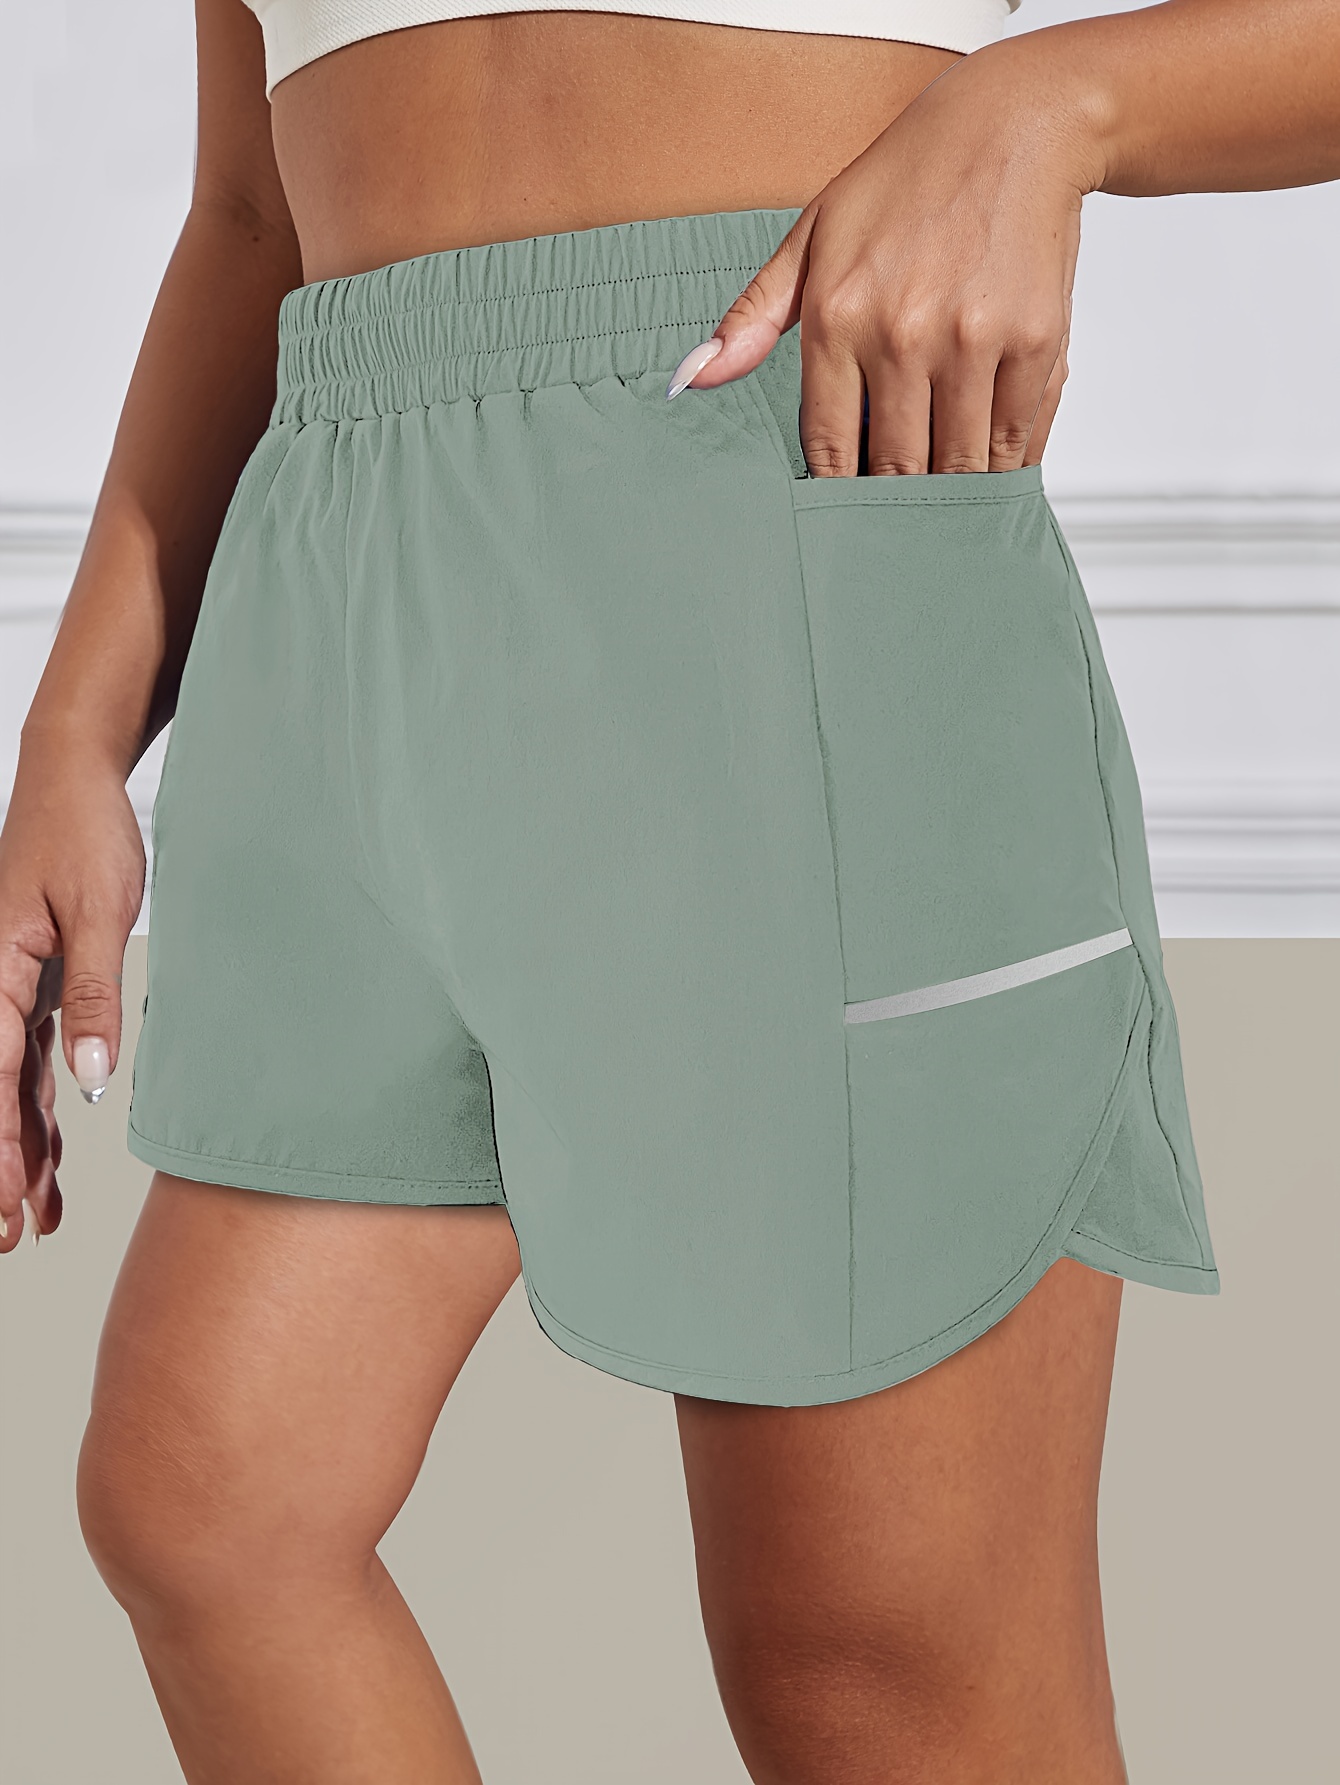 Pantalones COrtos De Cintura Alta InforMales De Verano Para MujEr Mini  Vestidos